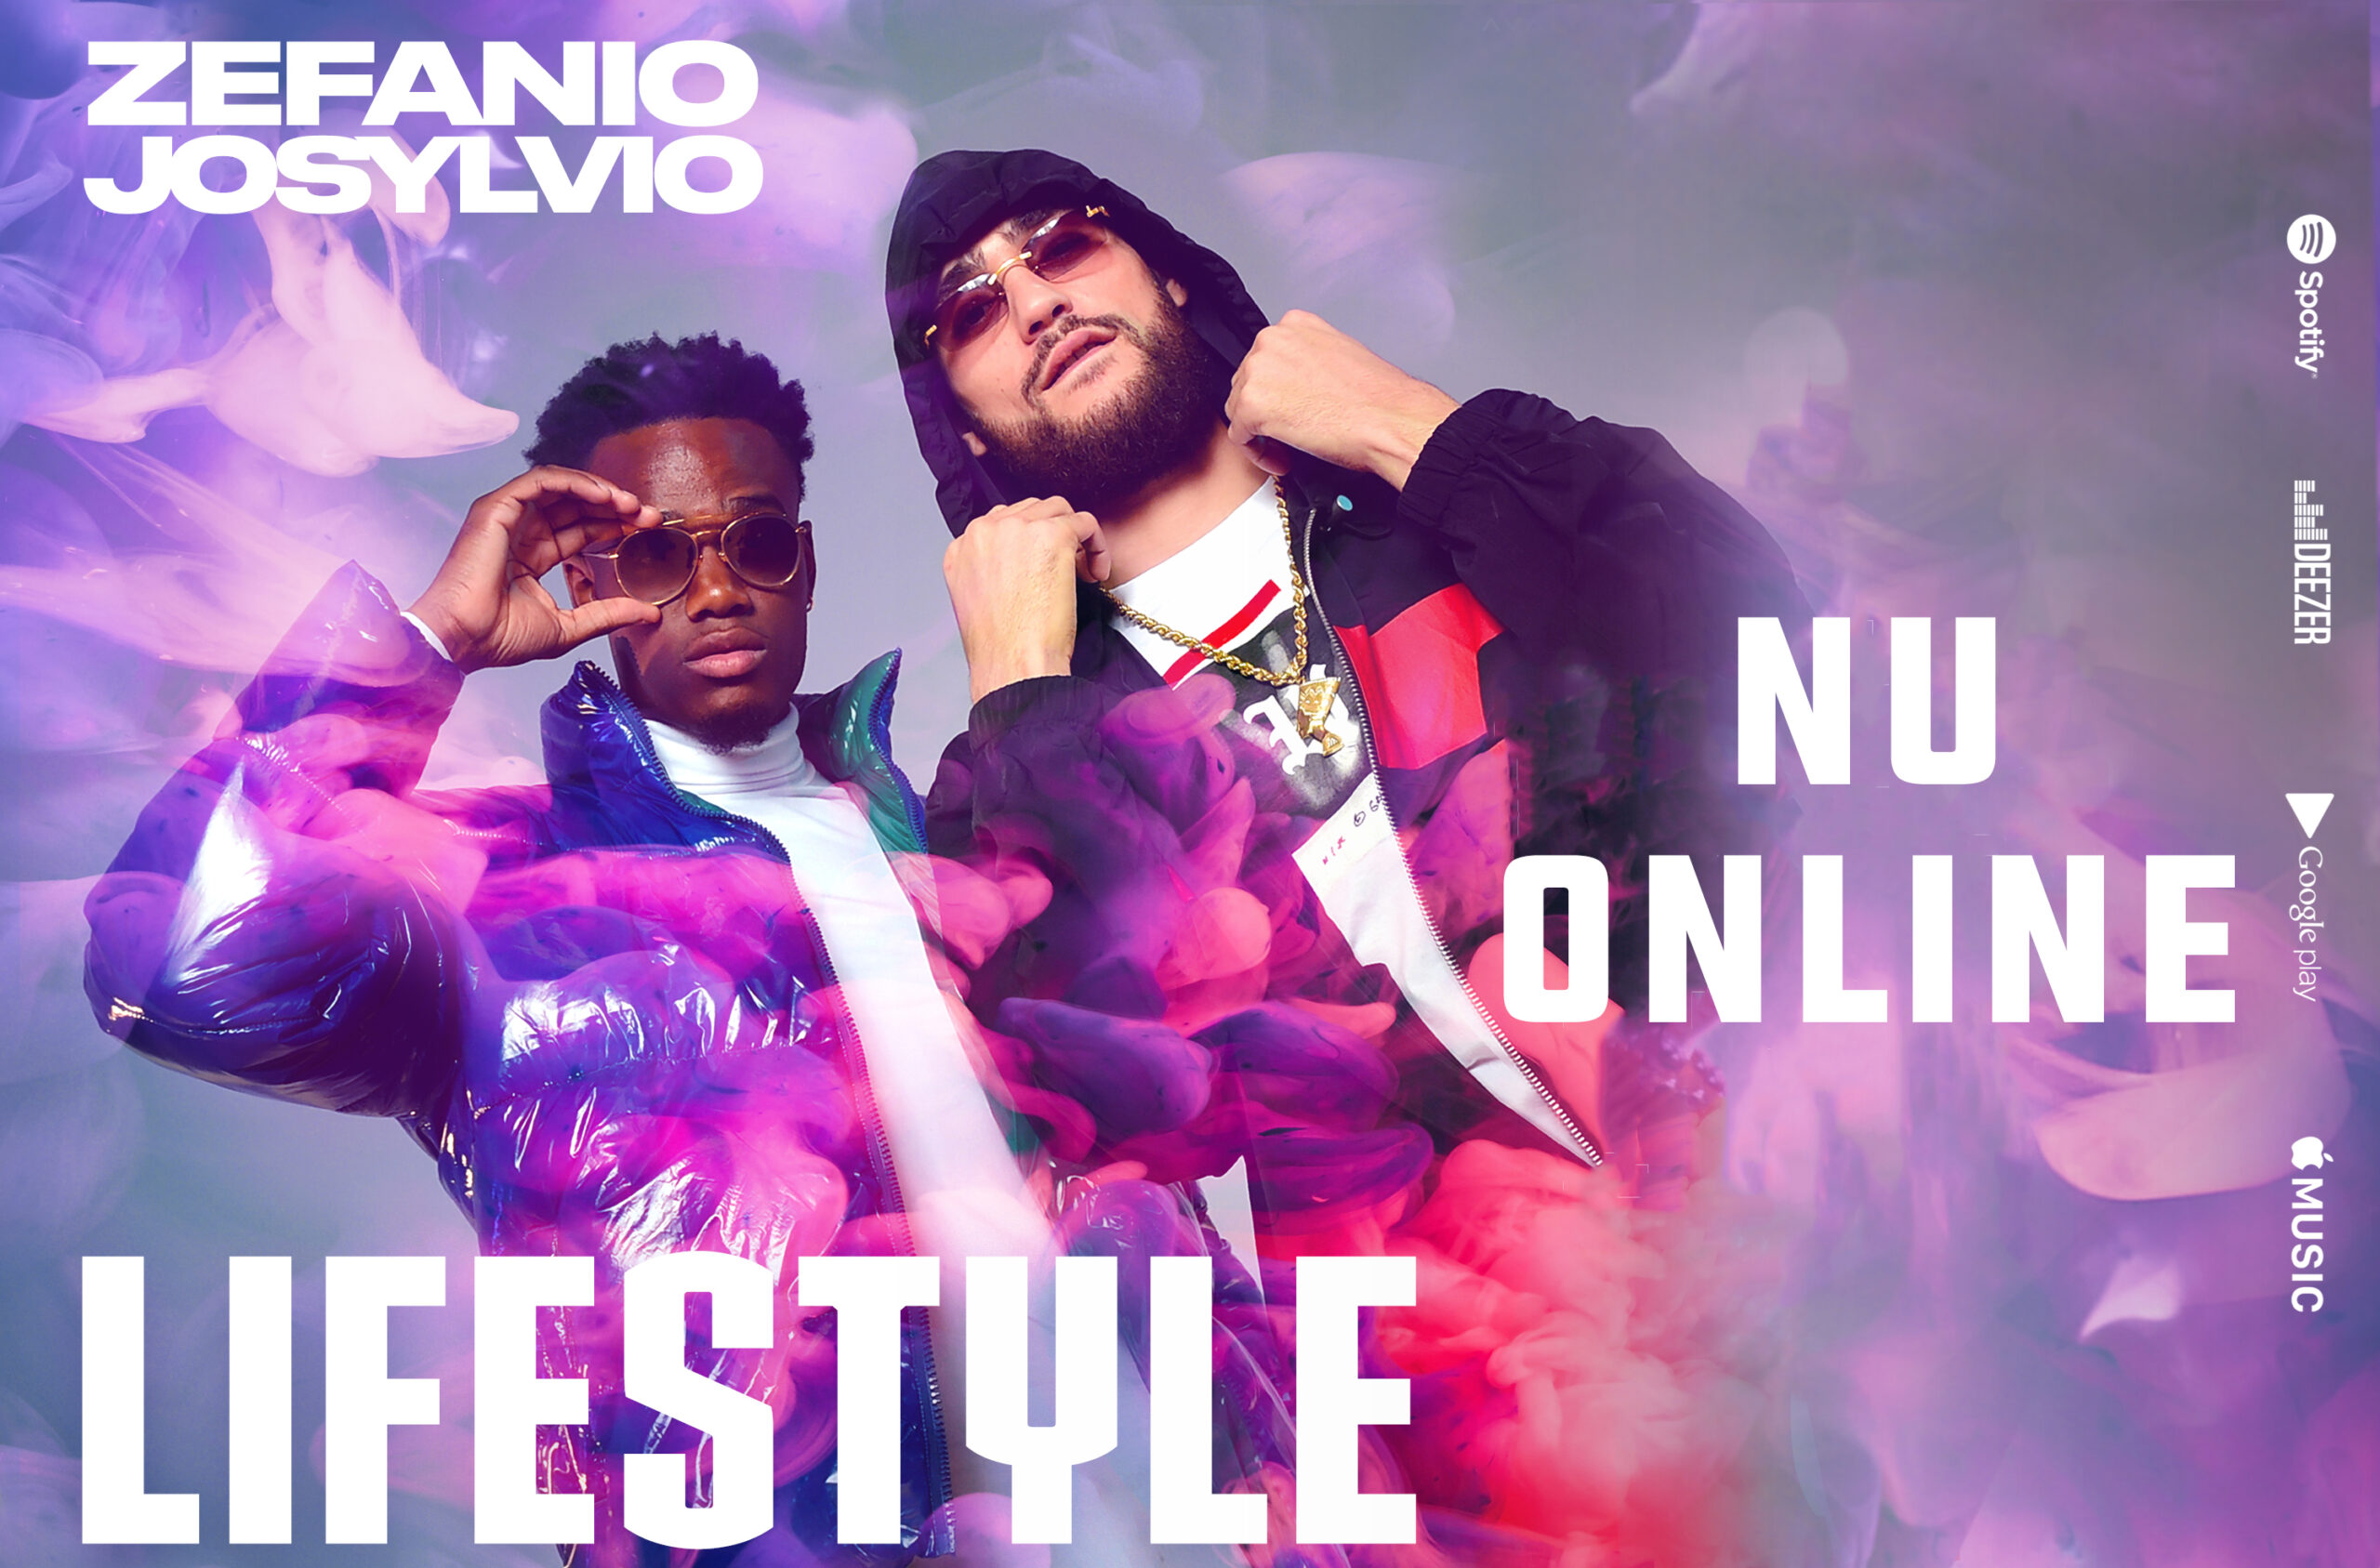 [NU ONLINE]: de nieuwste release ‘Zefanio – Lifestyle ft. Josylvio’ is vanaf nu te streamen op Spotify.